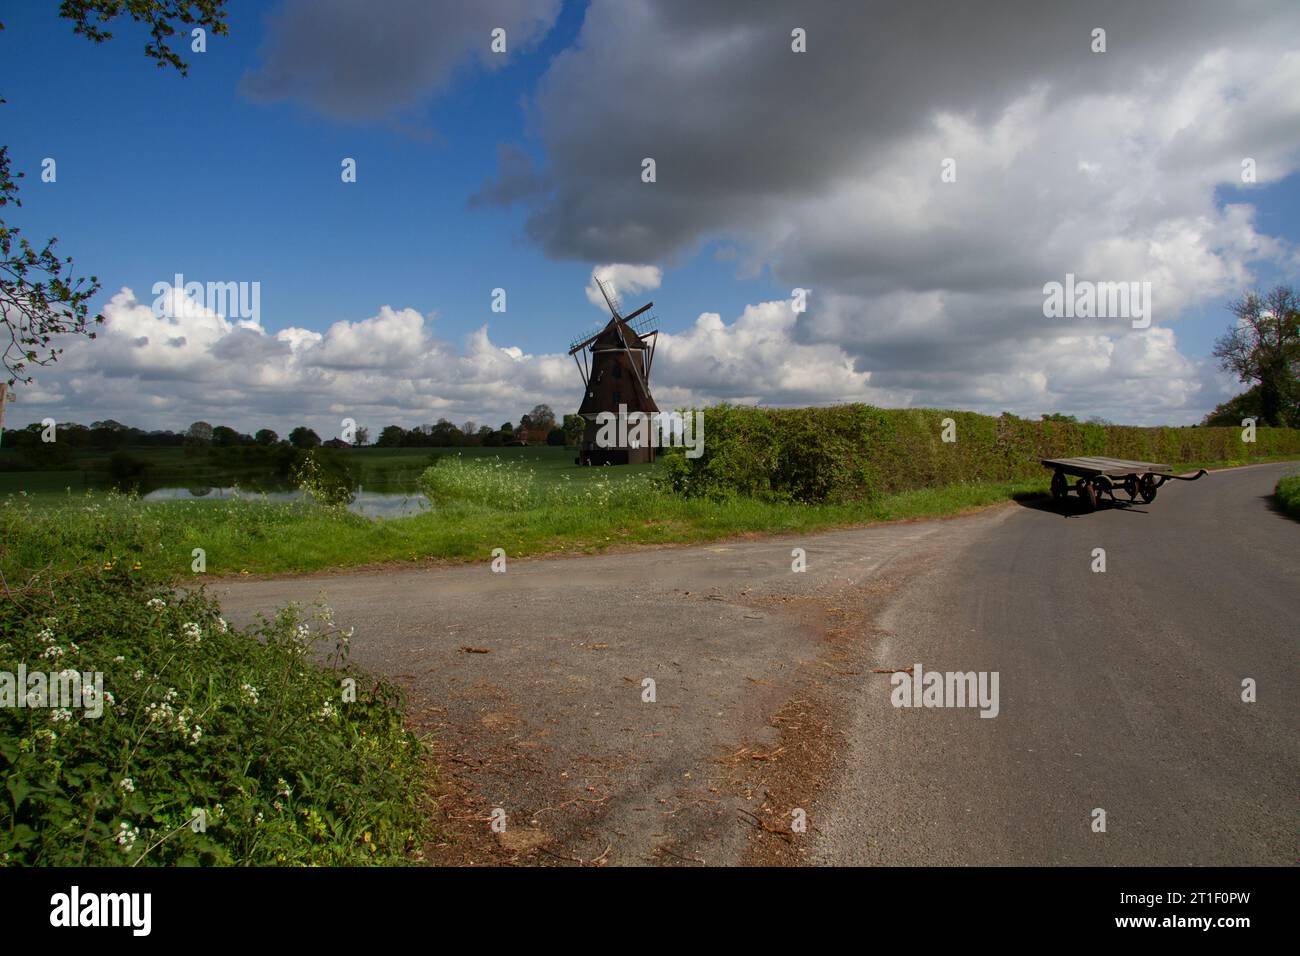 Un paesaggio rurale nell'Essex con un mulino a vento vicino a uno stagno, vicino a un vicolo con un vecchio carretto di legno Foto Stock